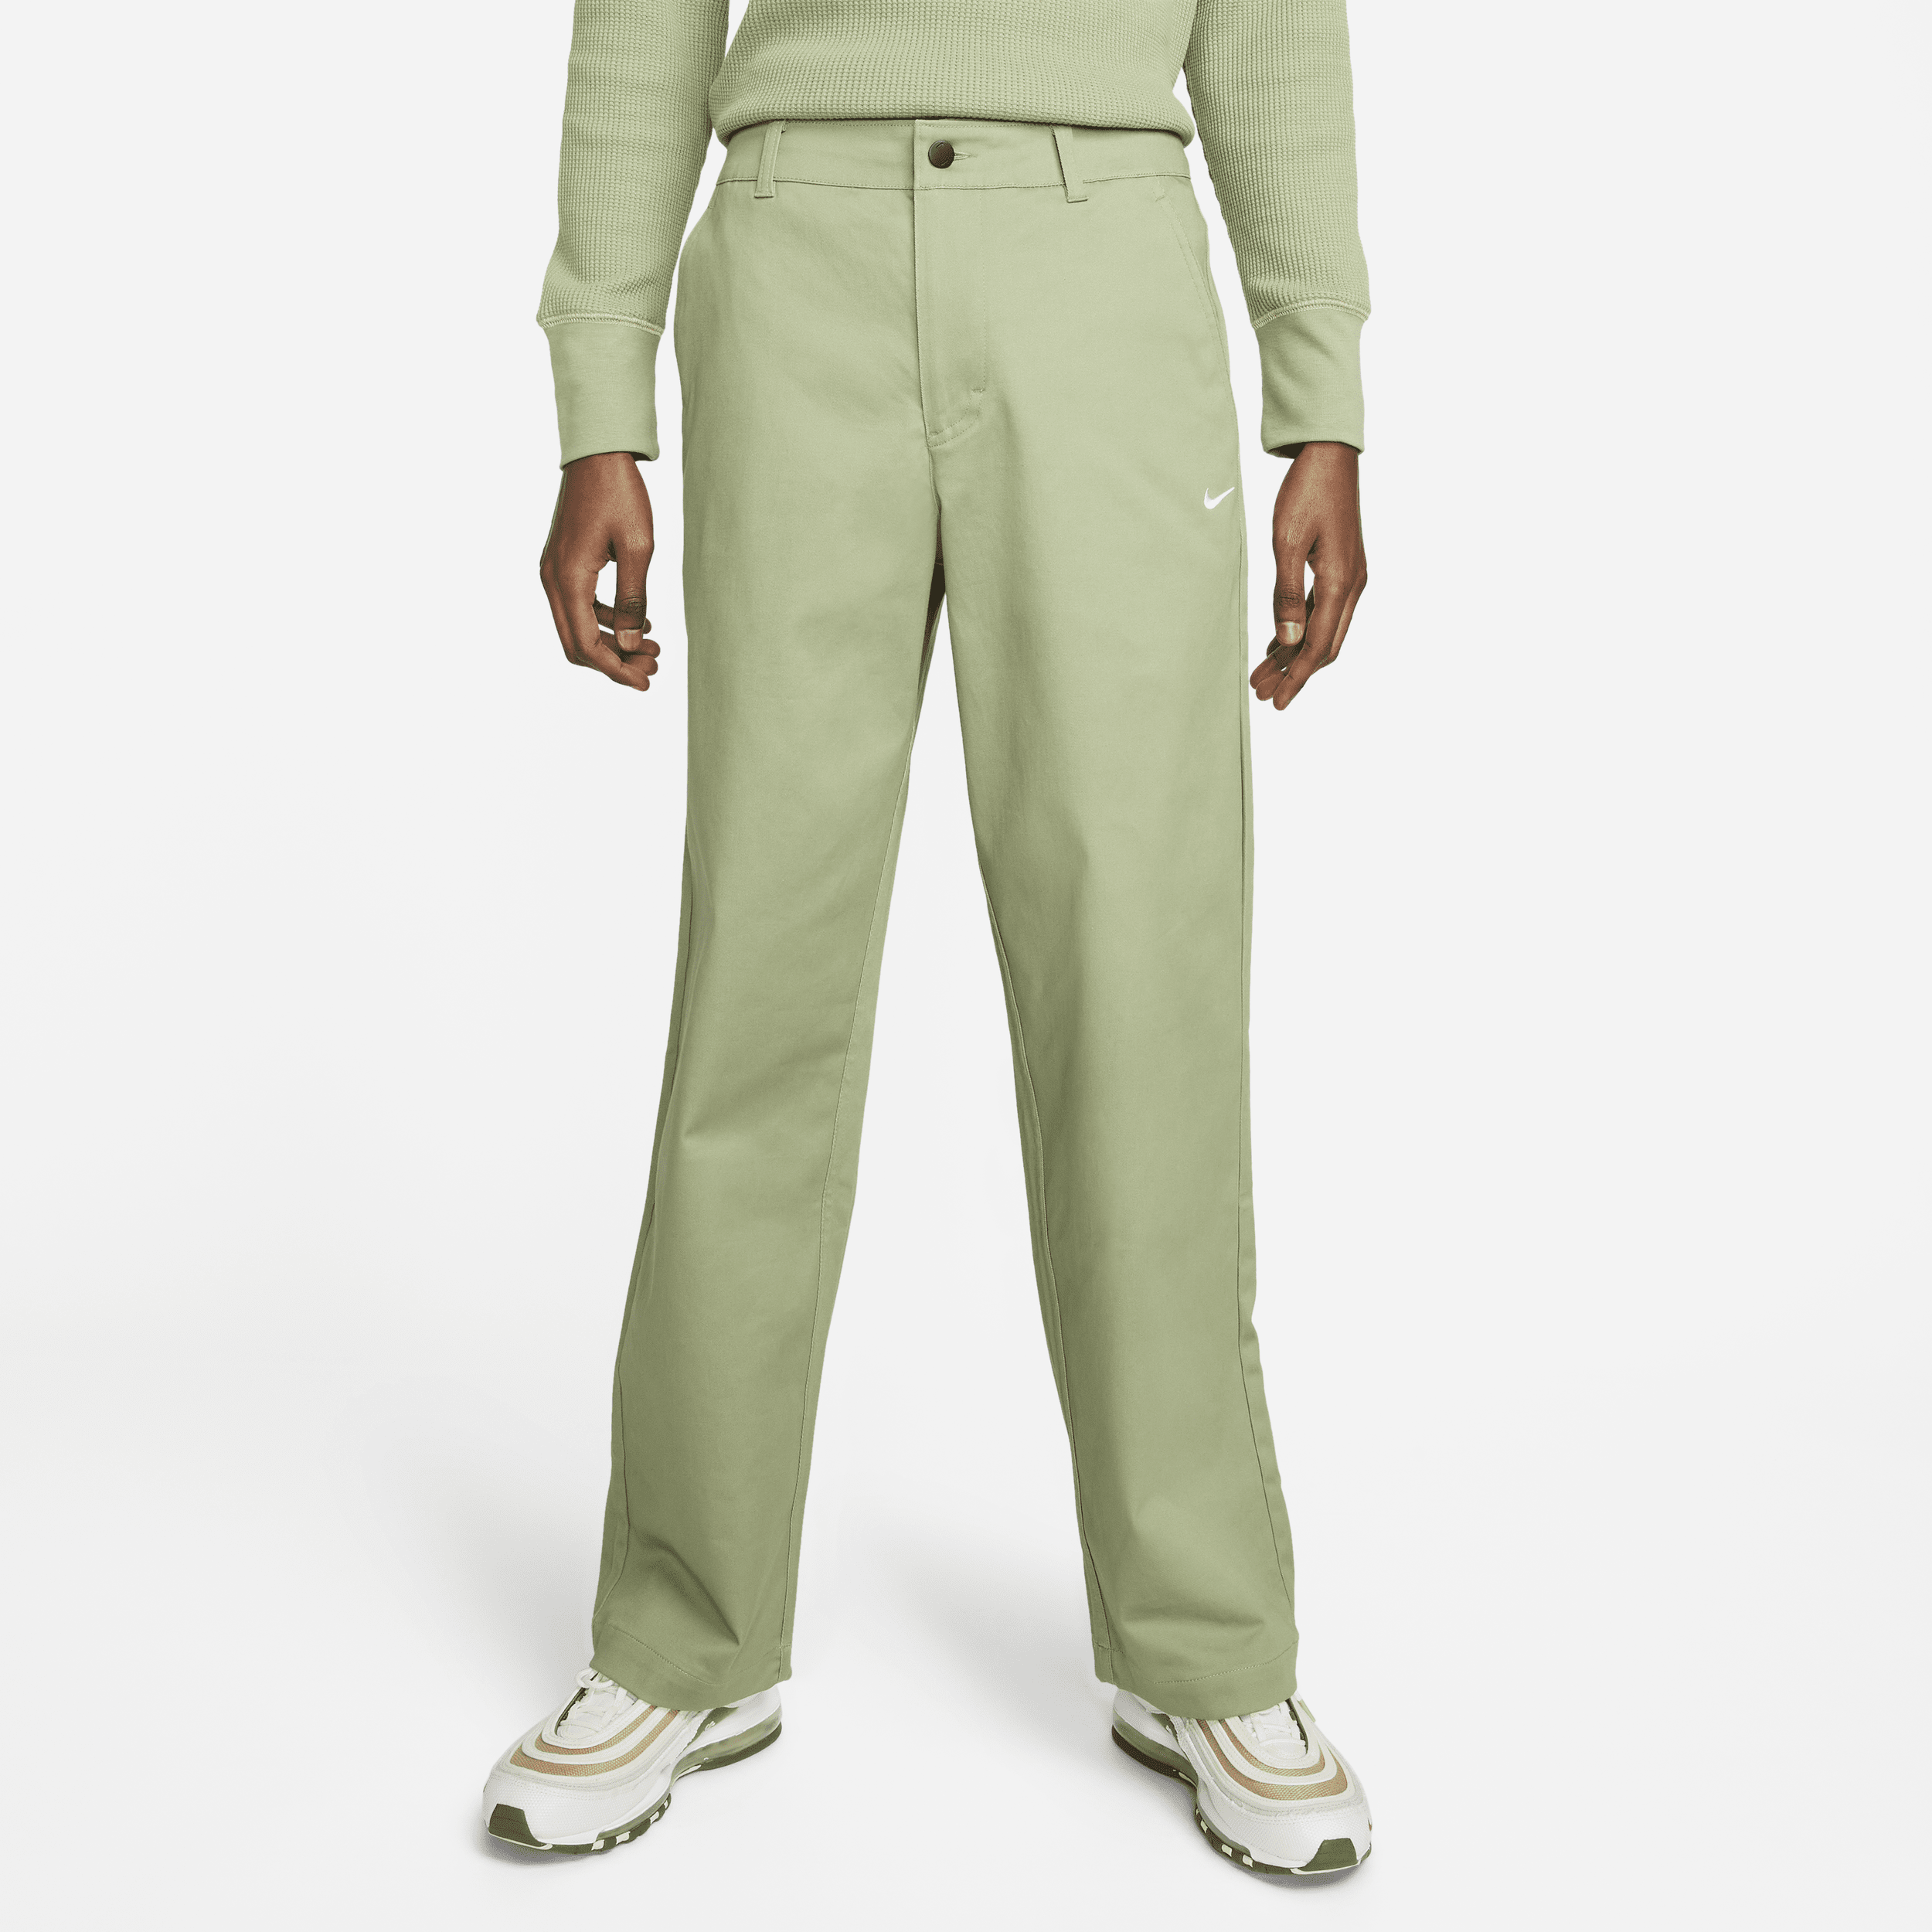 Nike Life Pantalón chino - Hombre - Verde